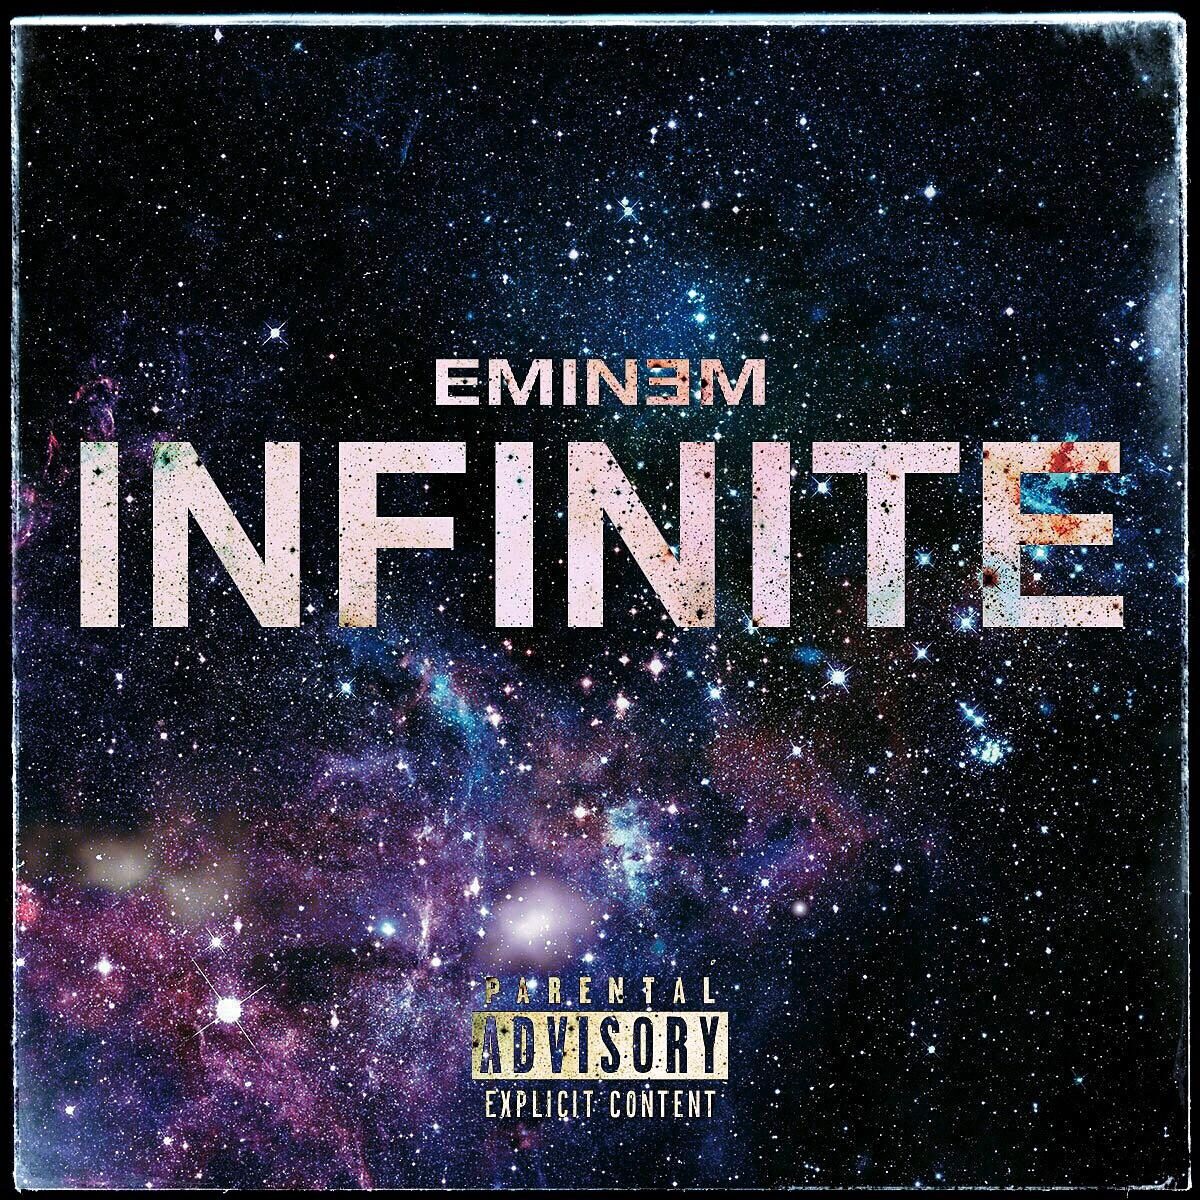 Eminem Discography: Albums By Rapper Eminem, 55% OFF